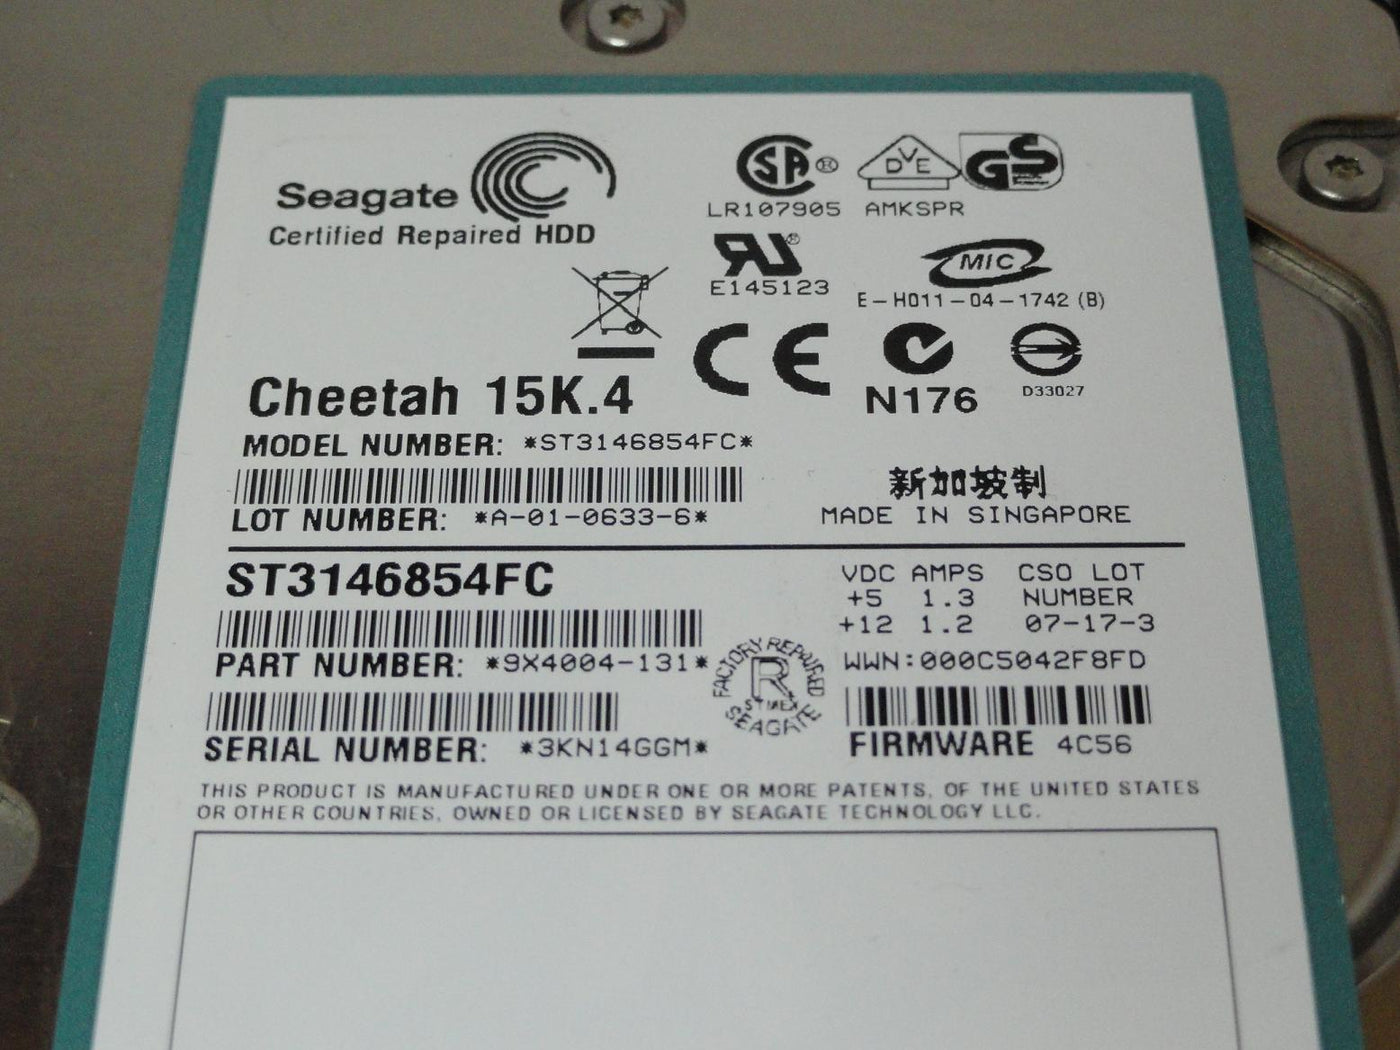 PR23616_9X4004-131_Seagate Hitachi 146GB FC 15Krpm Recertified HDD - Image4